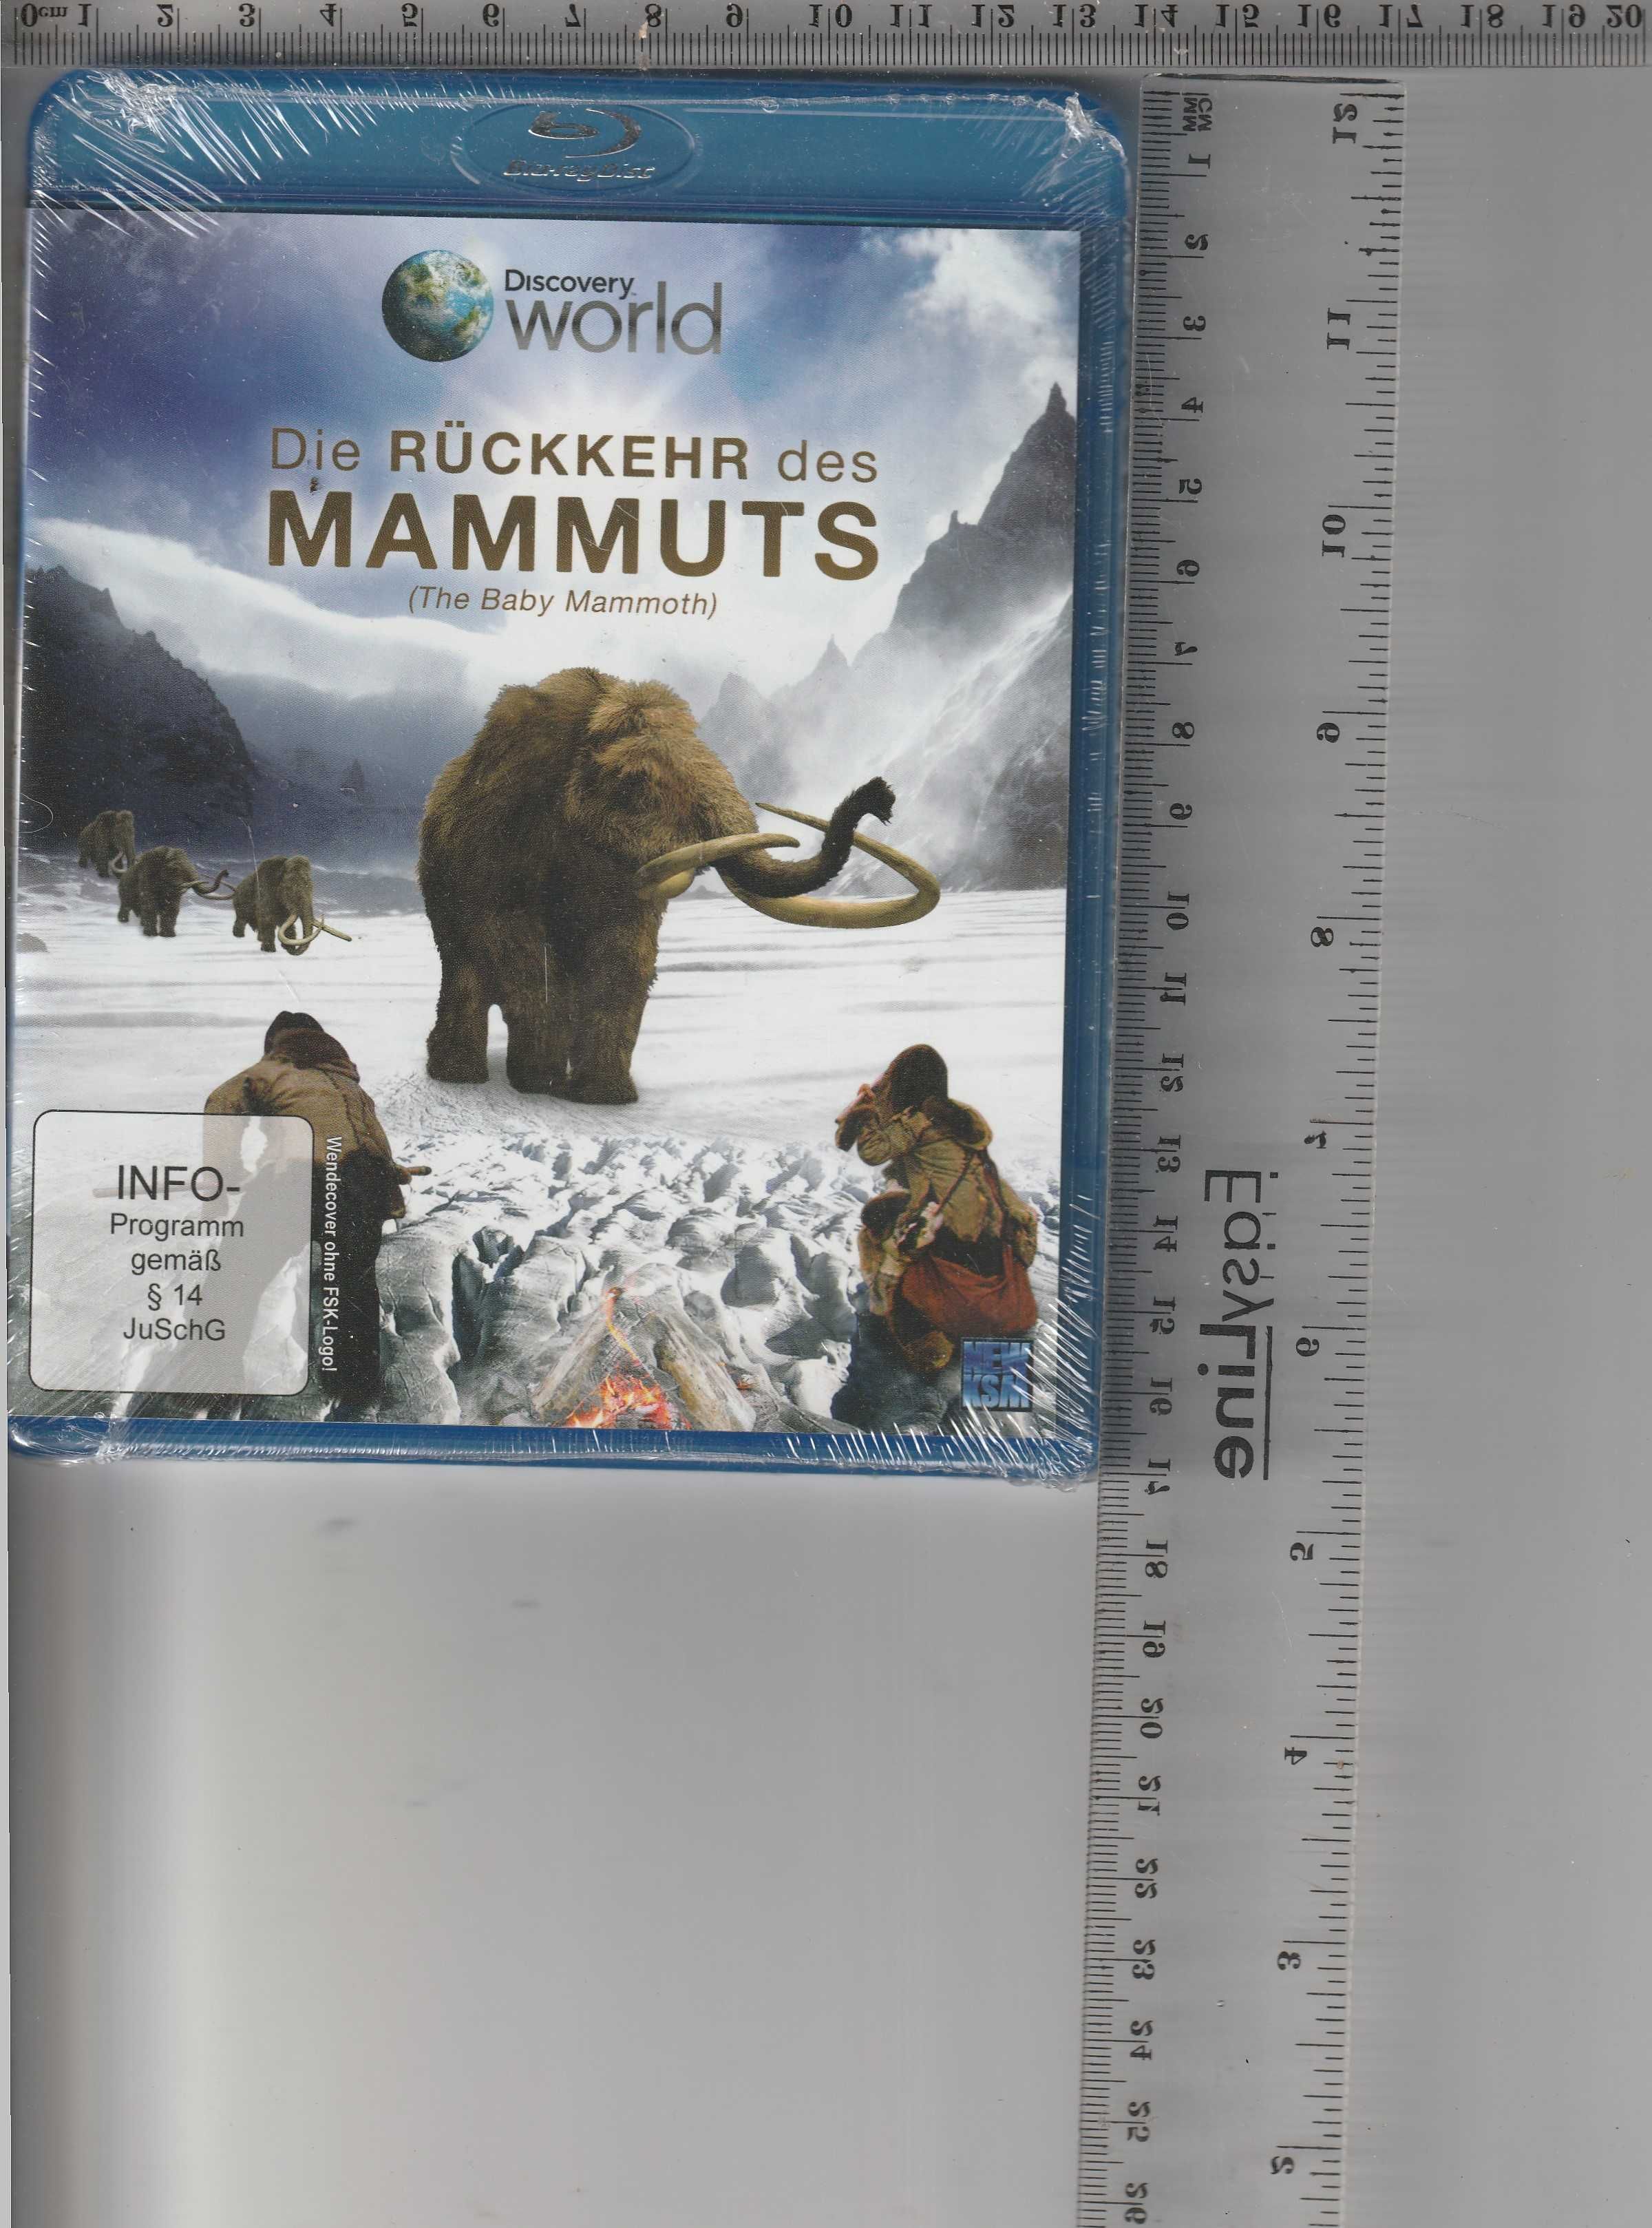 Die ruckkehr des mammuts Discovery world